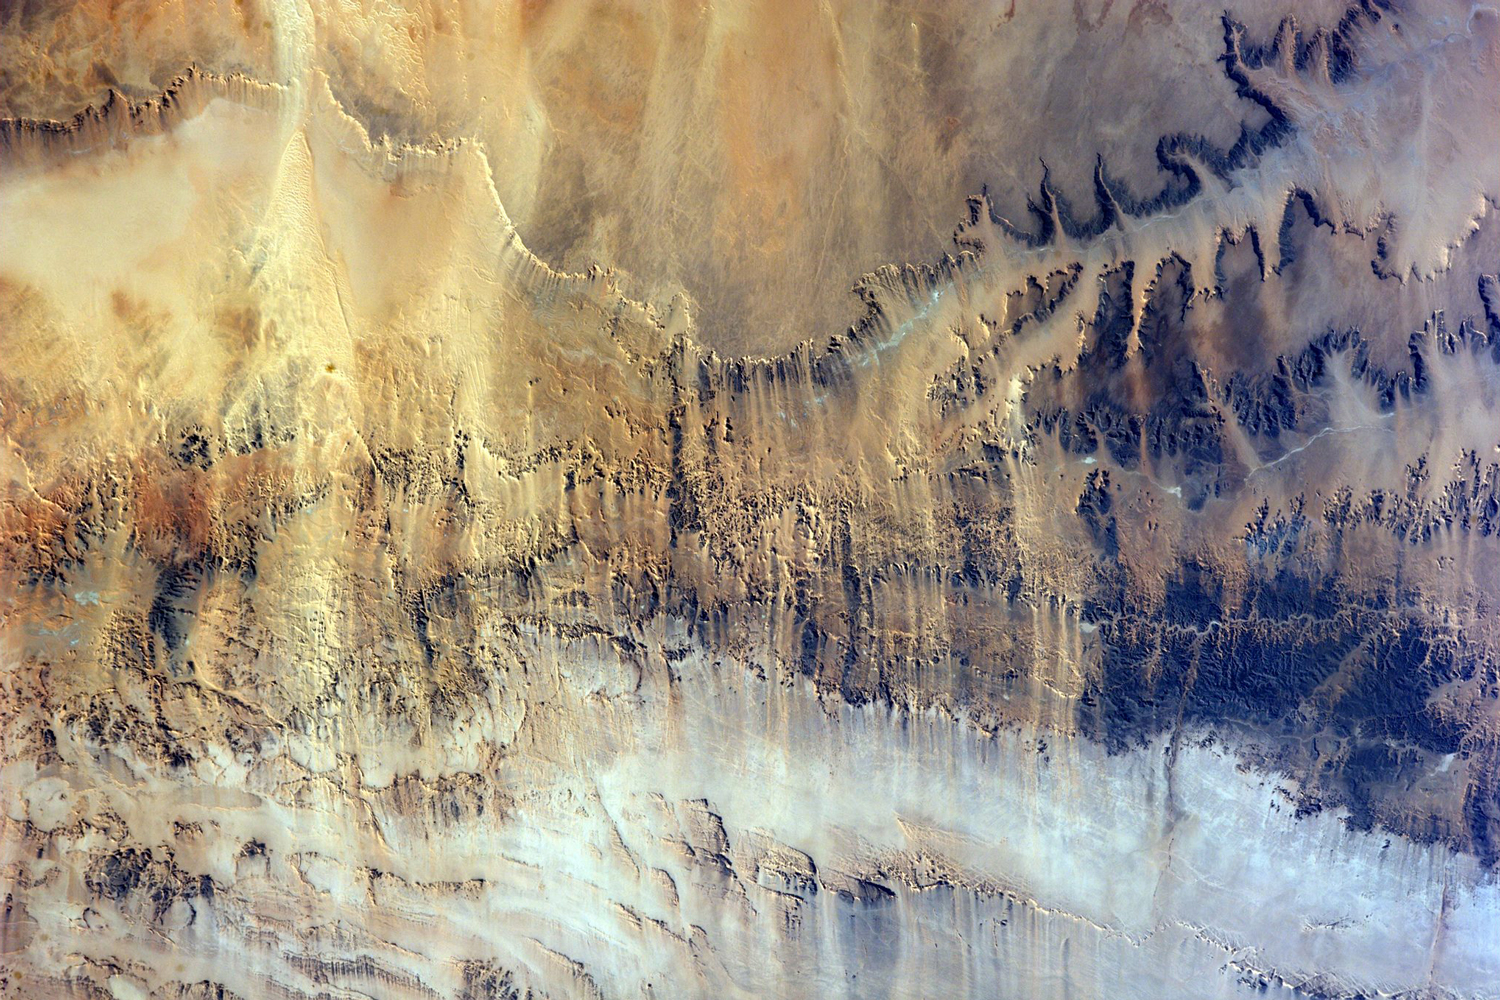 Una fotografía desde el espacio muestra los valles del norte de África esculpidos por el viento